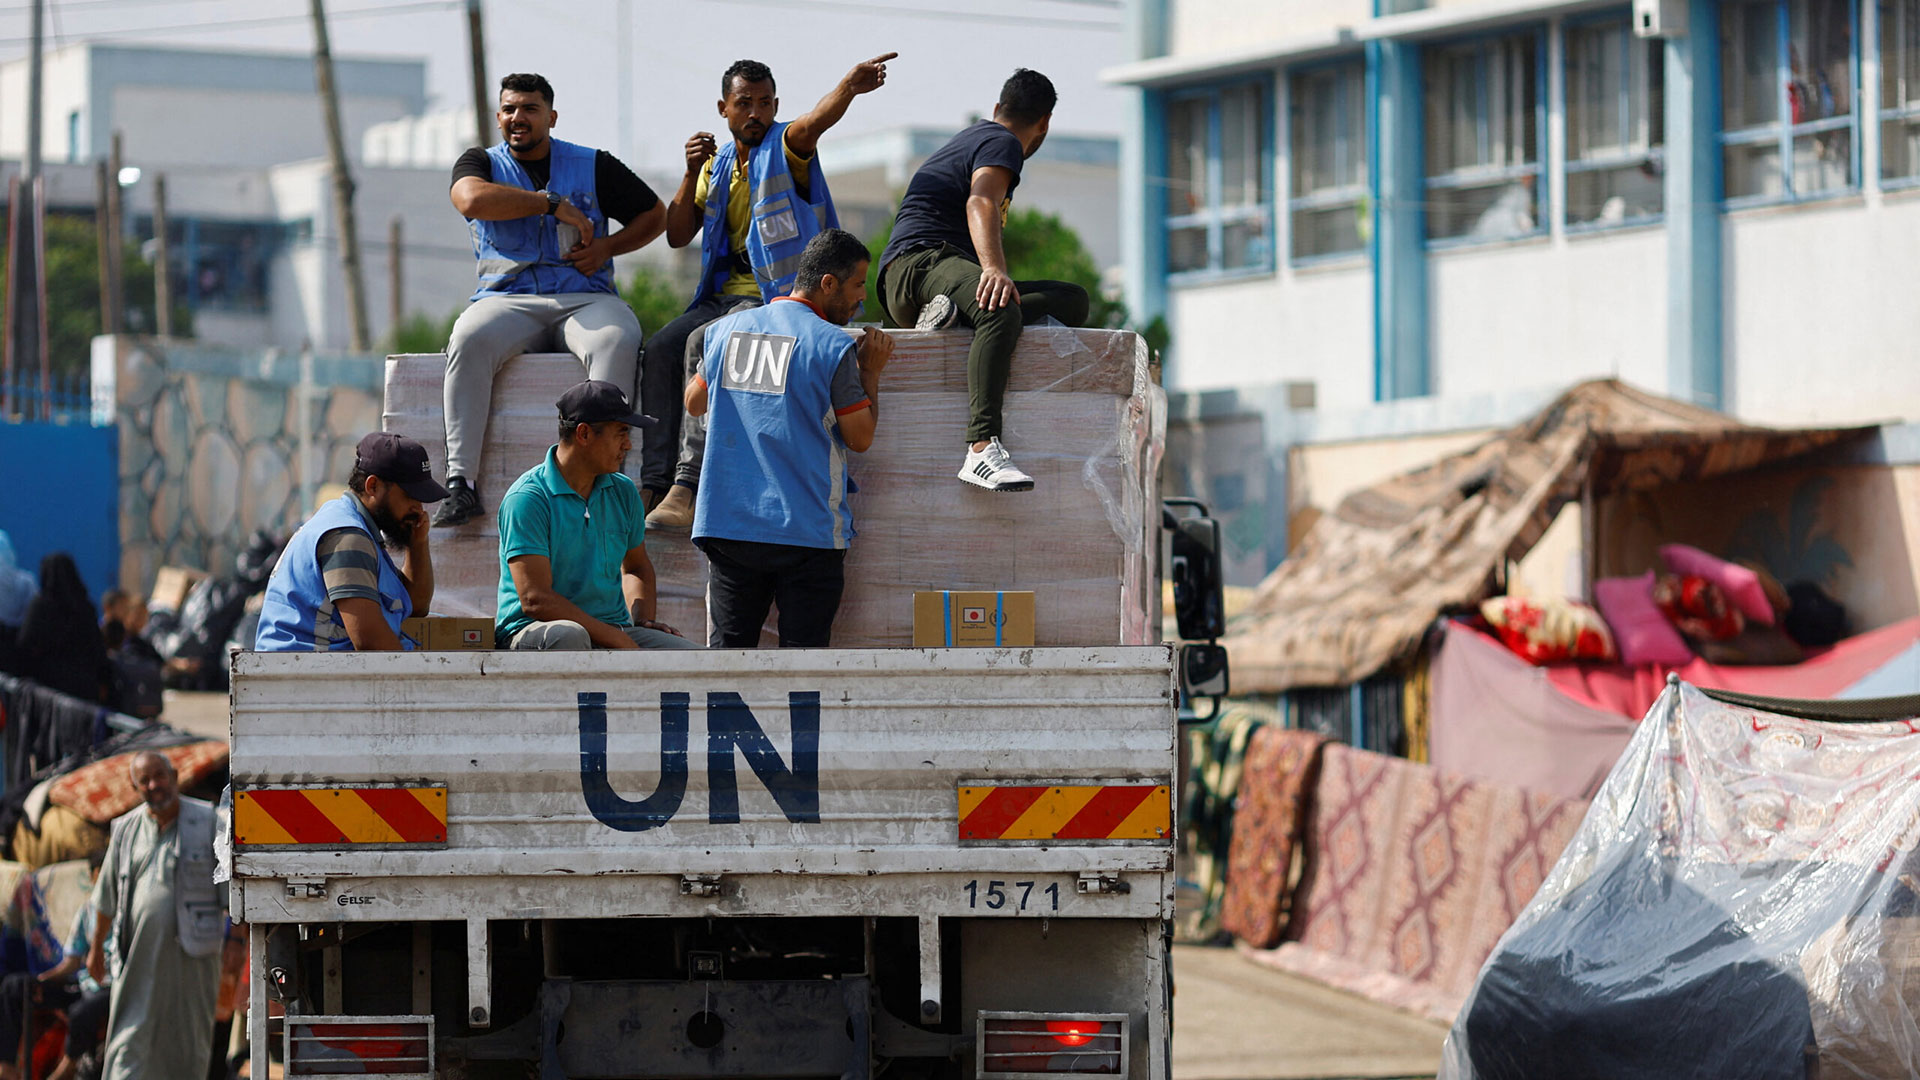 ΟΗΕ: Το Συμβούλιο Ασφαλείας ζητά την προστασία του προσωπικού παροχής ανθρωπιστικής βοήθειας